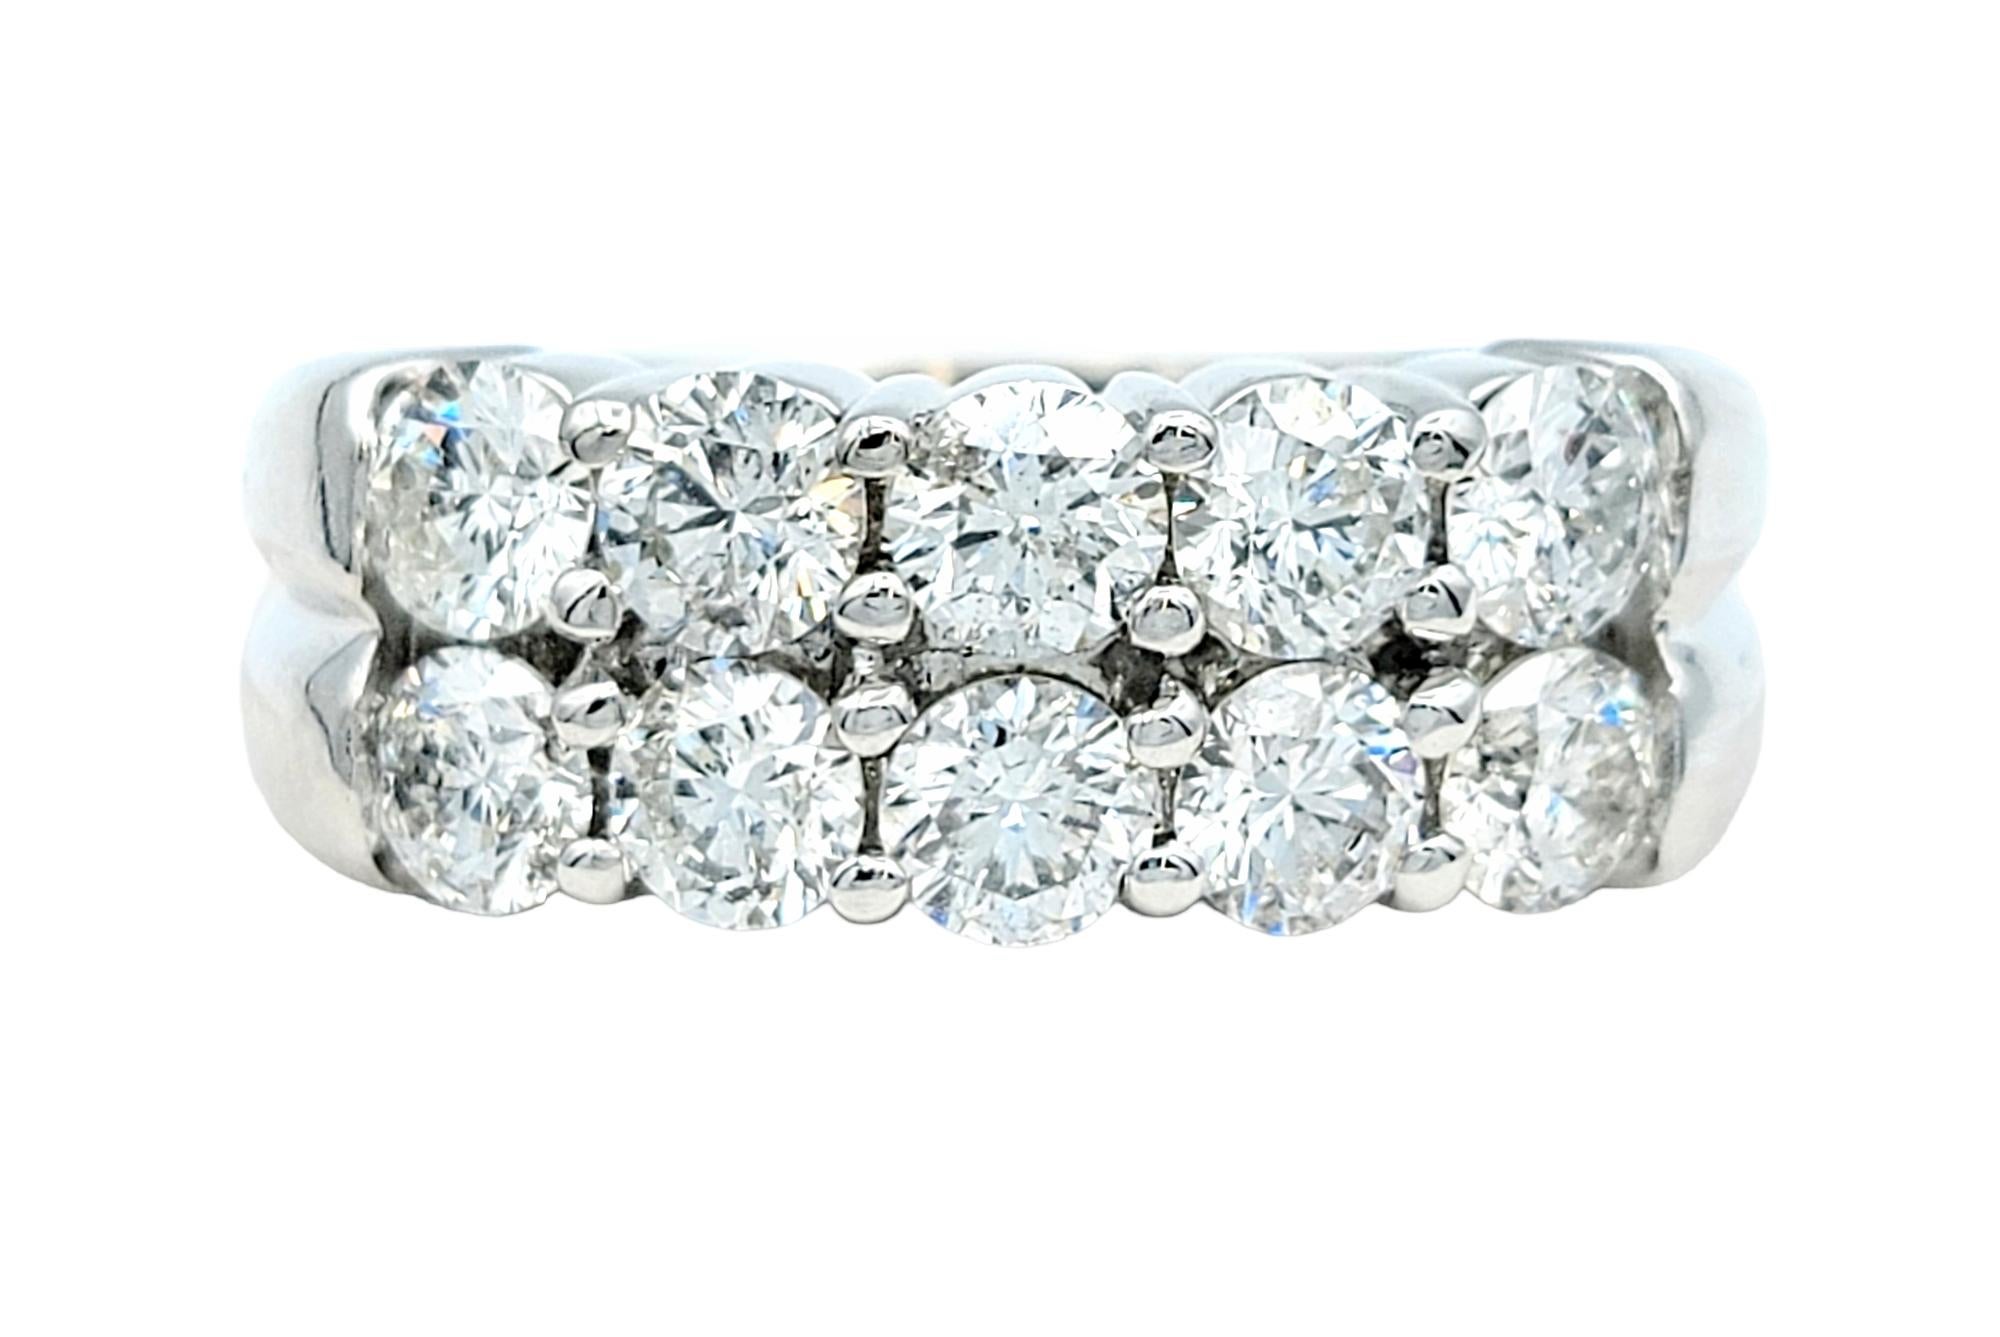 Taille de l'anneau : 6.75

Elegance et sophistication se rejoignent dans ce superbe anneau en or blanc orné de dix diamants ronds exquis. Fabriquée avec précision et passion, cette bague est un témoignage de beauté intemporelle et d'amour